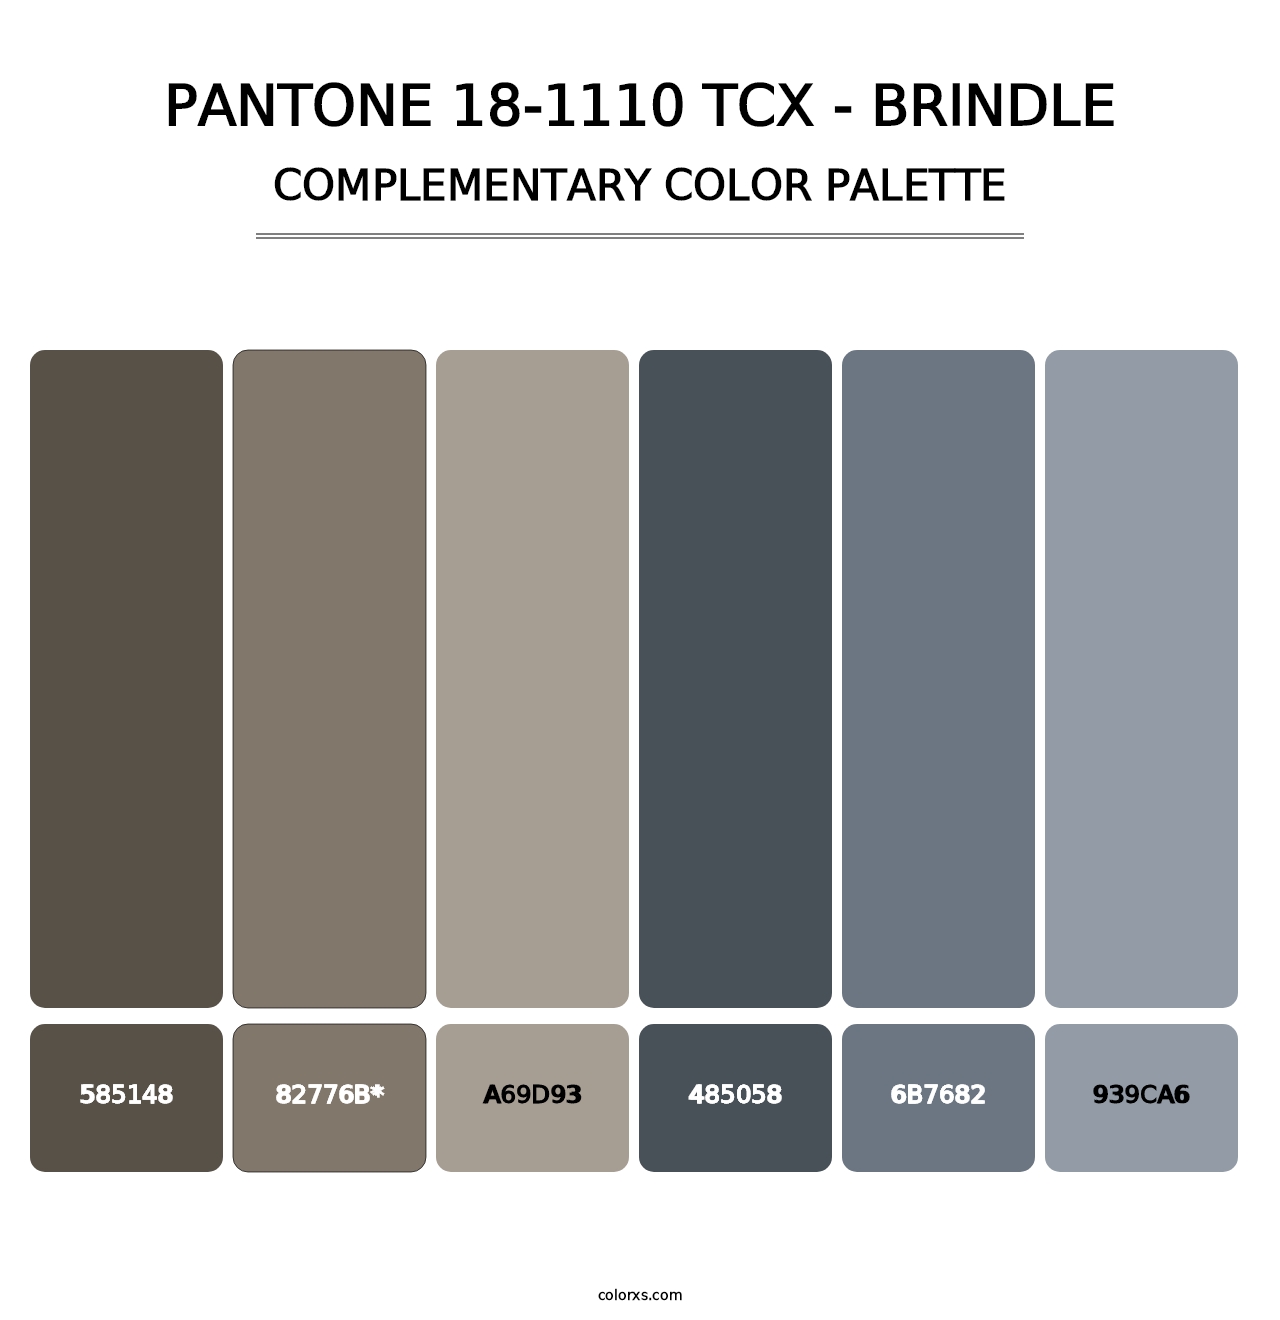 PANTONE 18-1110 TCX - Brindle - Complementary Color Palette